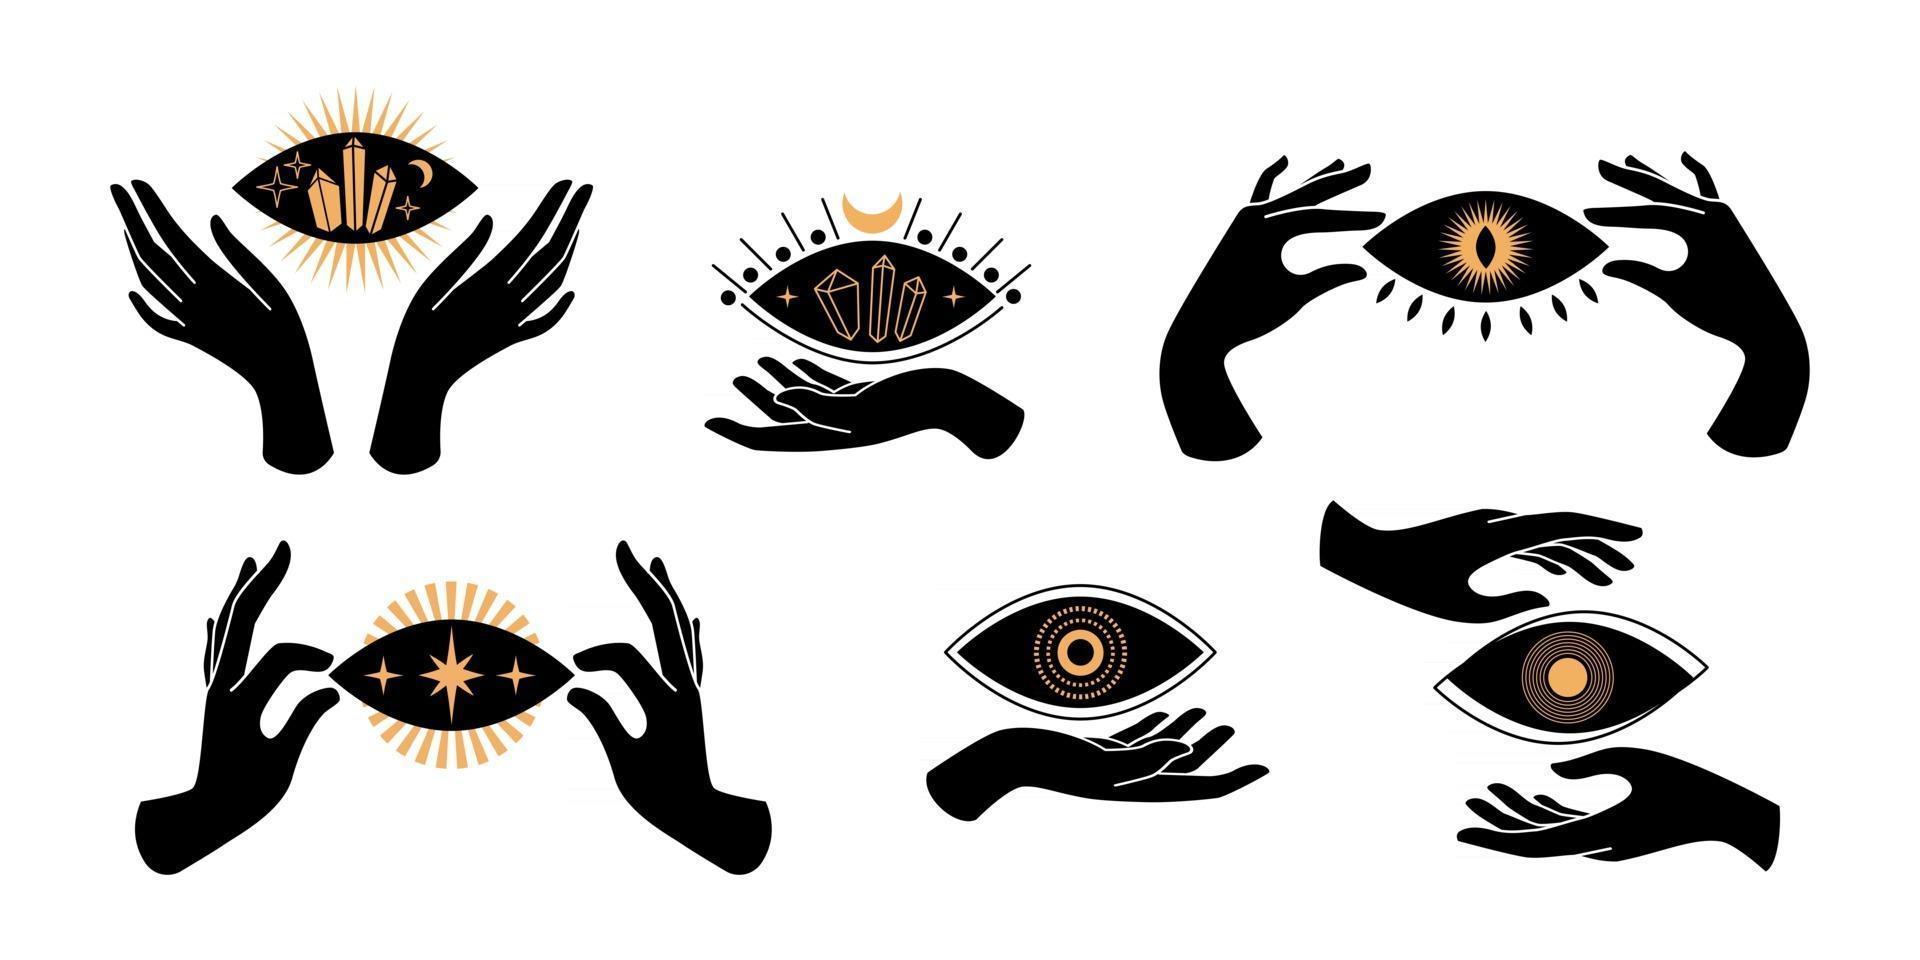 Boho schwarze Hände Silhouetten esoterische Symbole mit spirituellen Symbolen Halbmond, Stern, Auge, Sonne. schwarzes weibliches mystisches Konzept. flache Vektorgrafik. Design für T-Shirt Drucke, Poster, Tattoo vektor